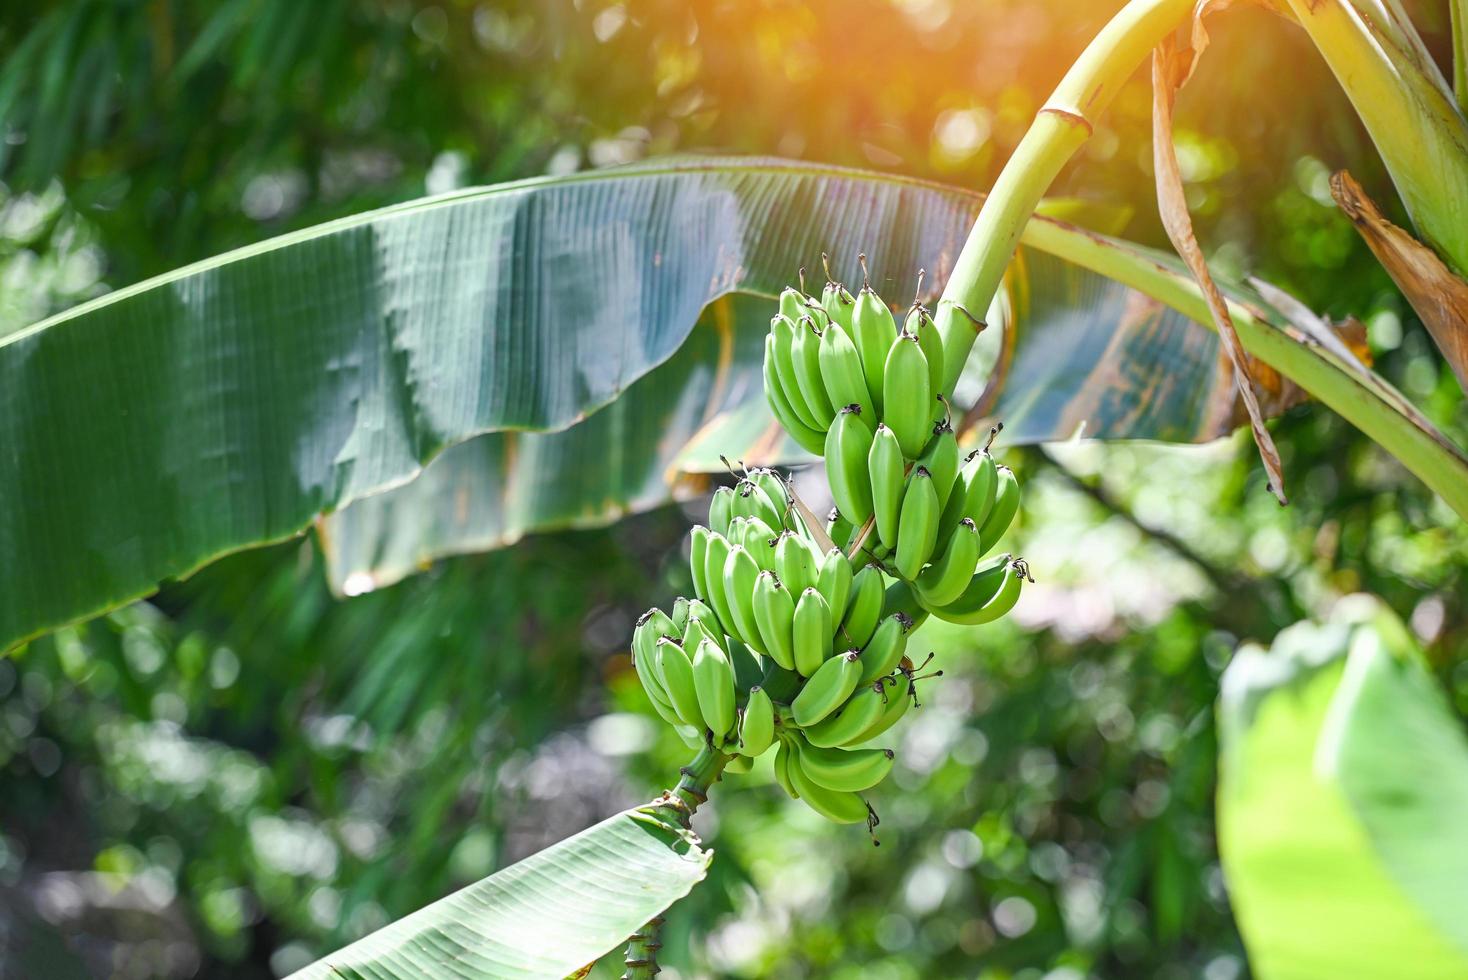 Plátanos verdes en el jardín de la plantación agrícola de banano en Tailandia fruta de verano foto